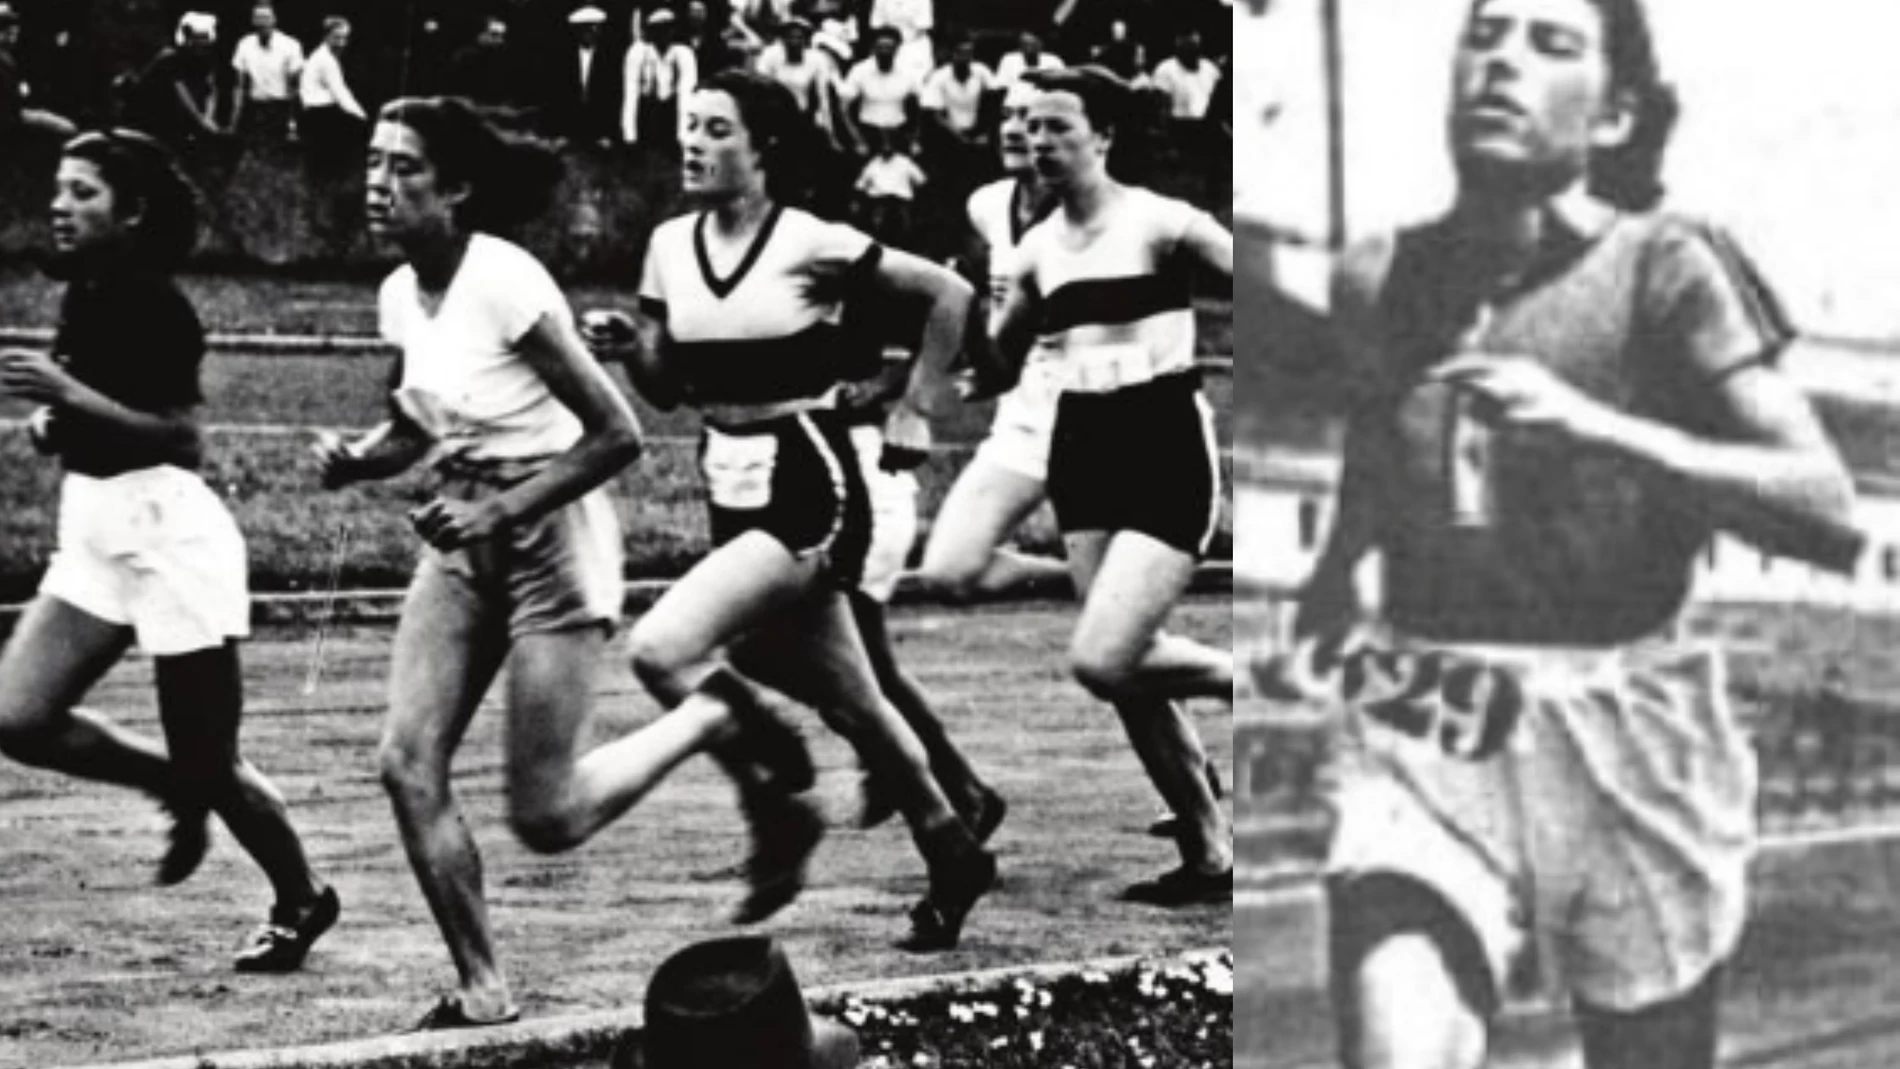 Franco prohibió el atletismo femenino porque masculinizaba a las mujeres